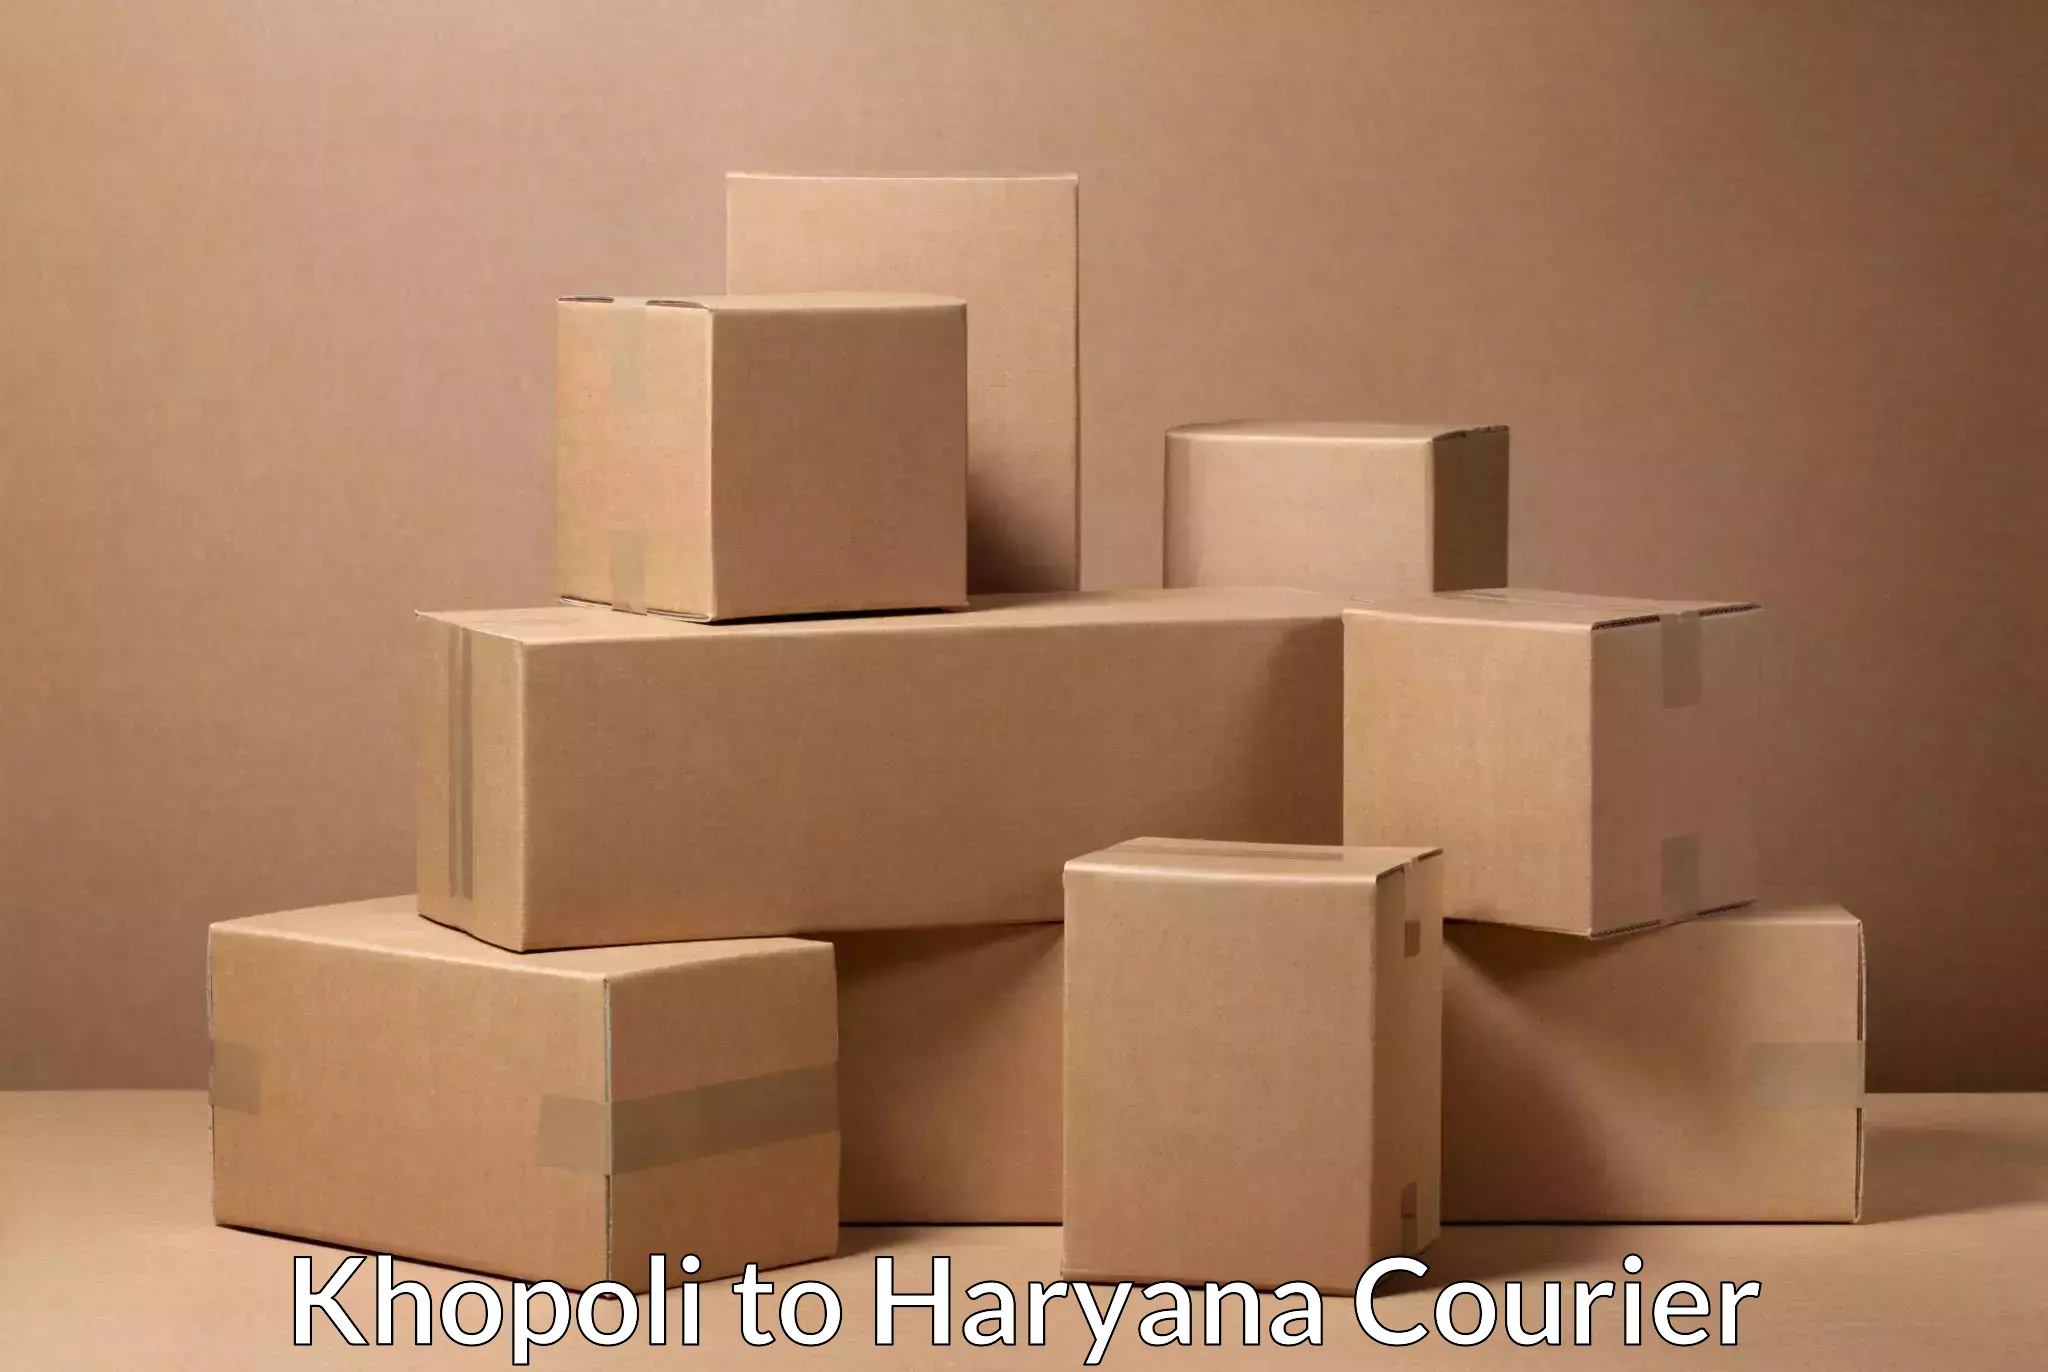 24-hour courier services Khopoli to Haryana